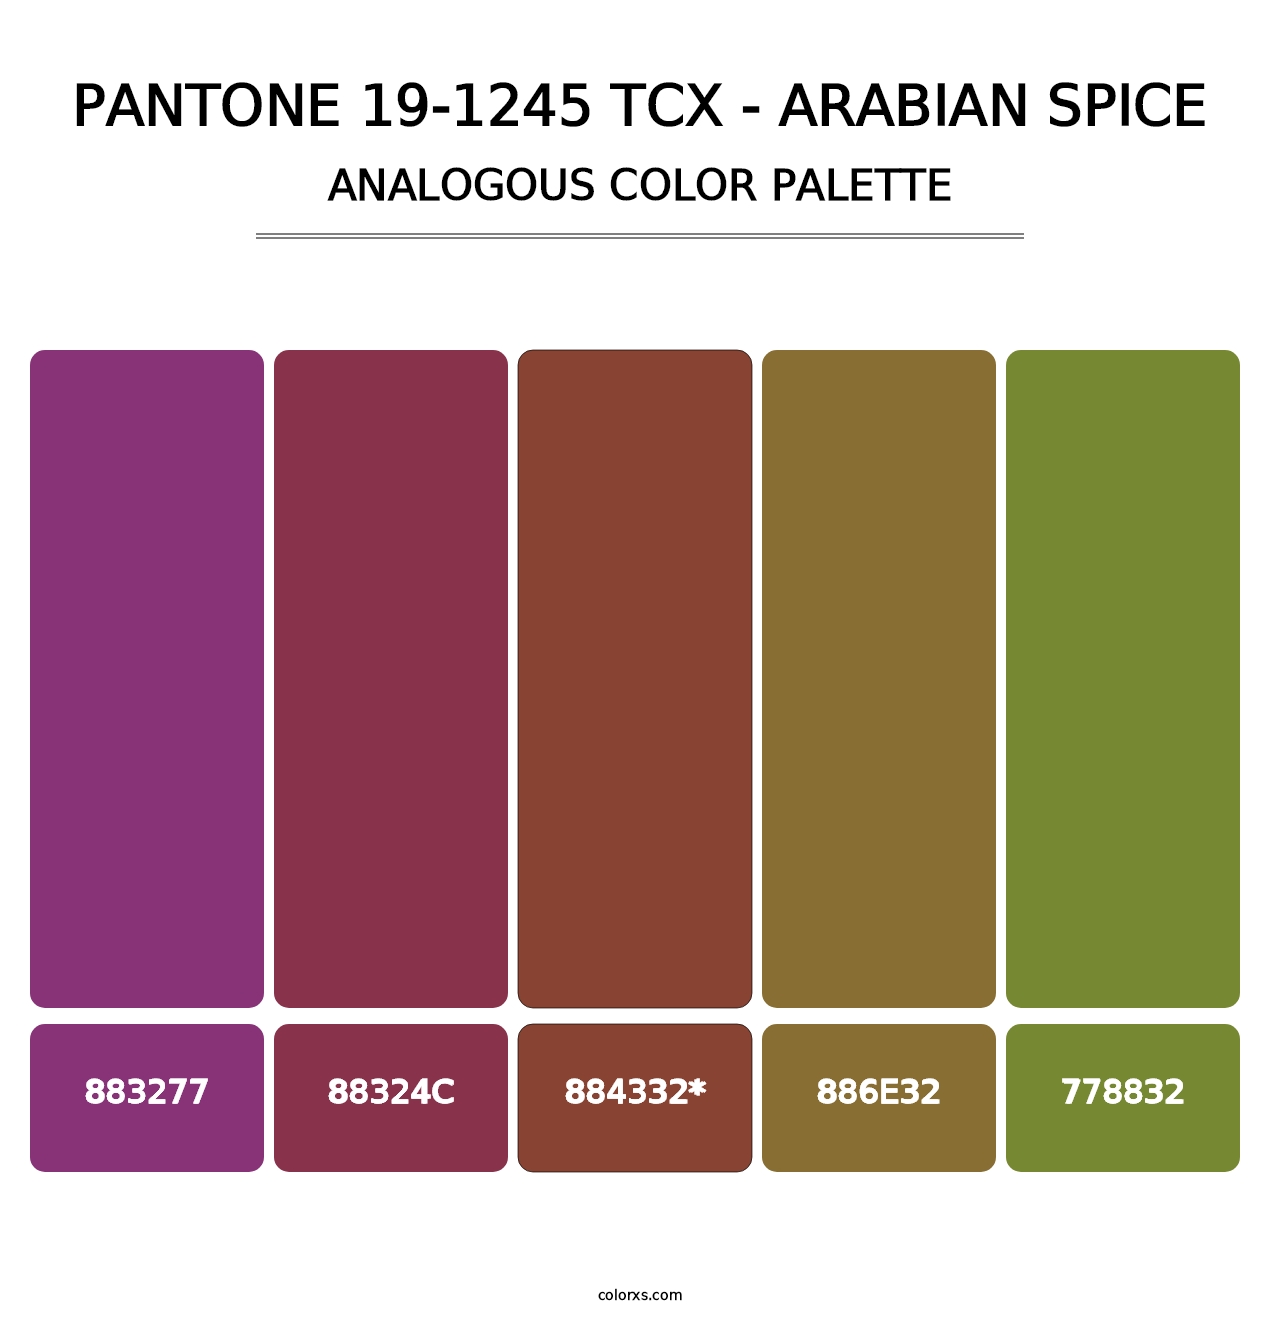 PANTONE 19-1245 TCX - Arabian Spice - Analogous Color Palette